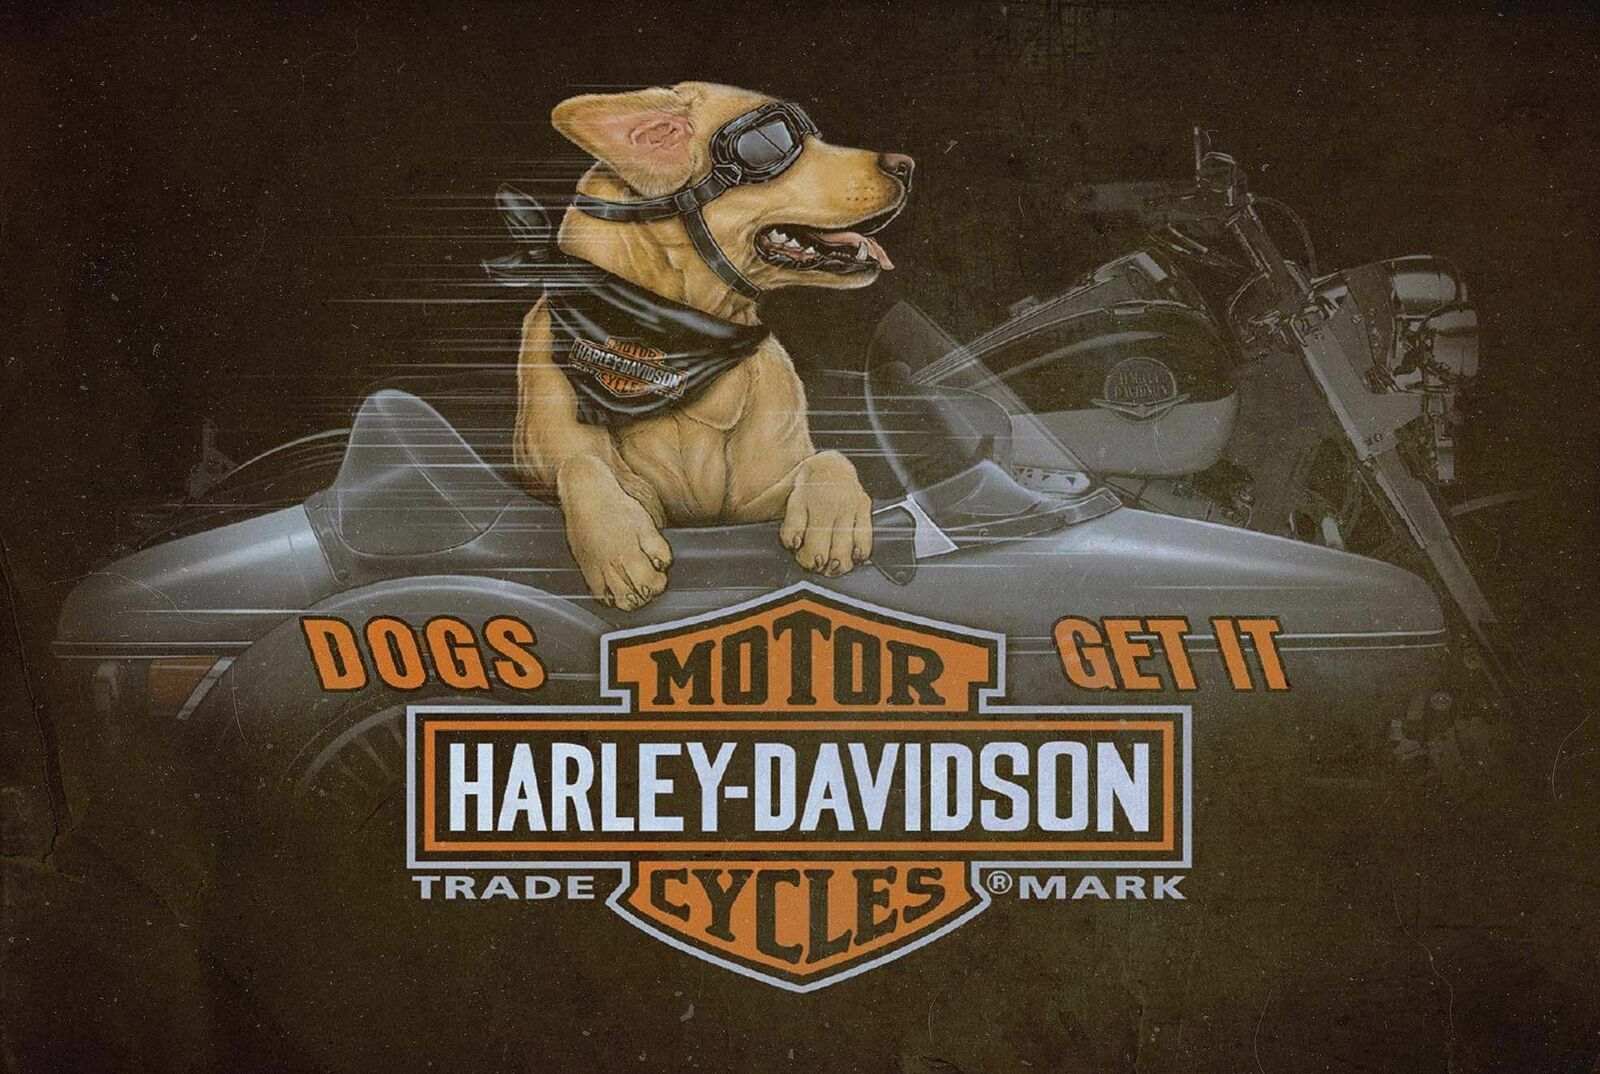 HARLEY DAVIDSON DOGS GET IT SIDE CAR 36\